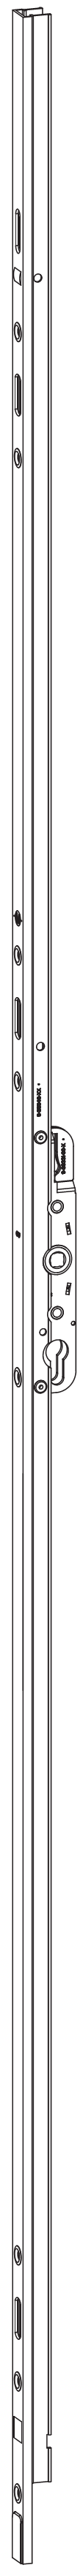 GU-ITALIA -  Cremonese HS 934 - 937 per alzante scorrevole altezza maniglia fissa con chiusura a perni - gr / dim. A PERNI DI CHIUSURA - entrata 37,5 - alt. man. 400 - lbb/hbb 840 - 1260